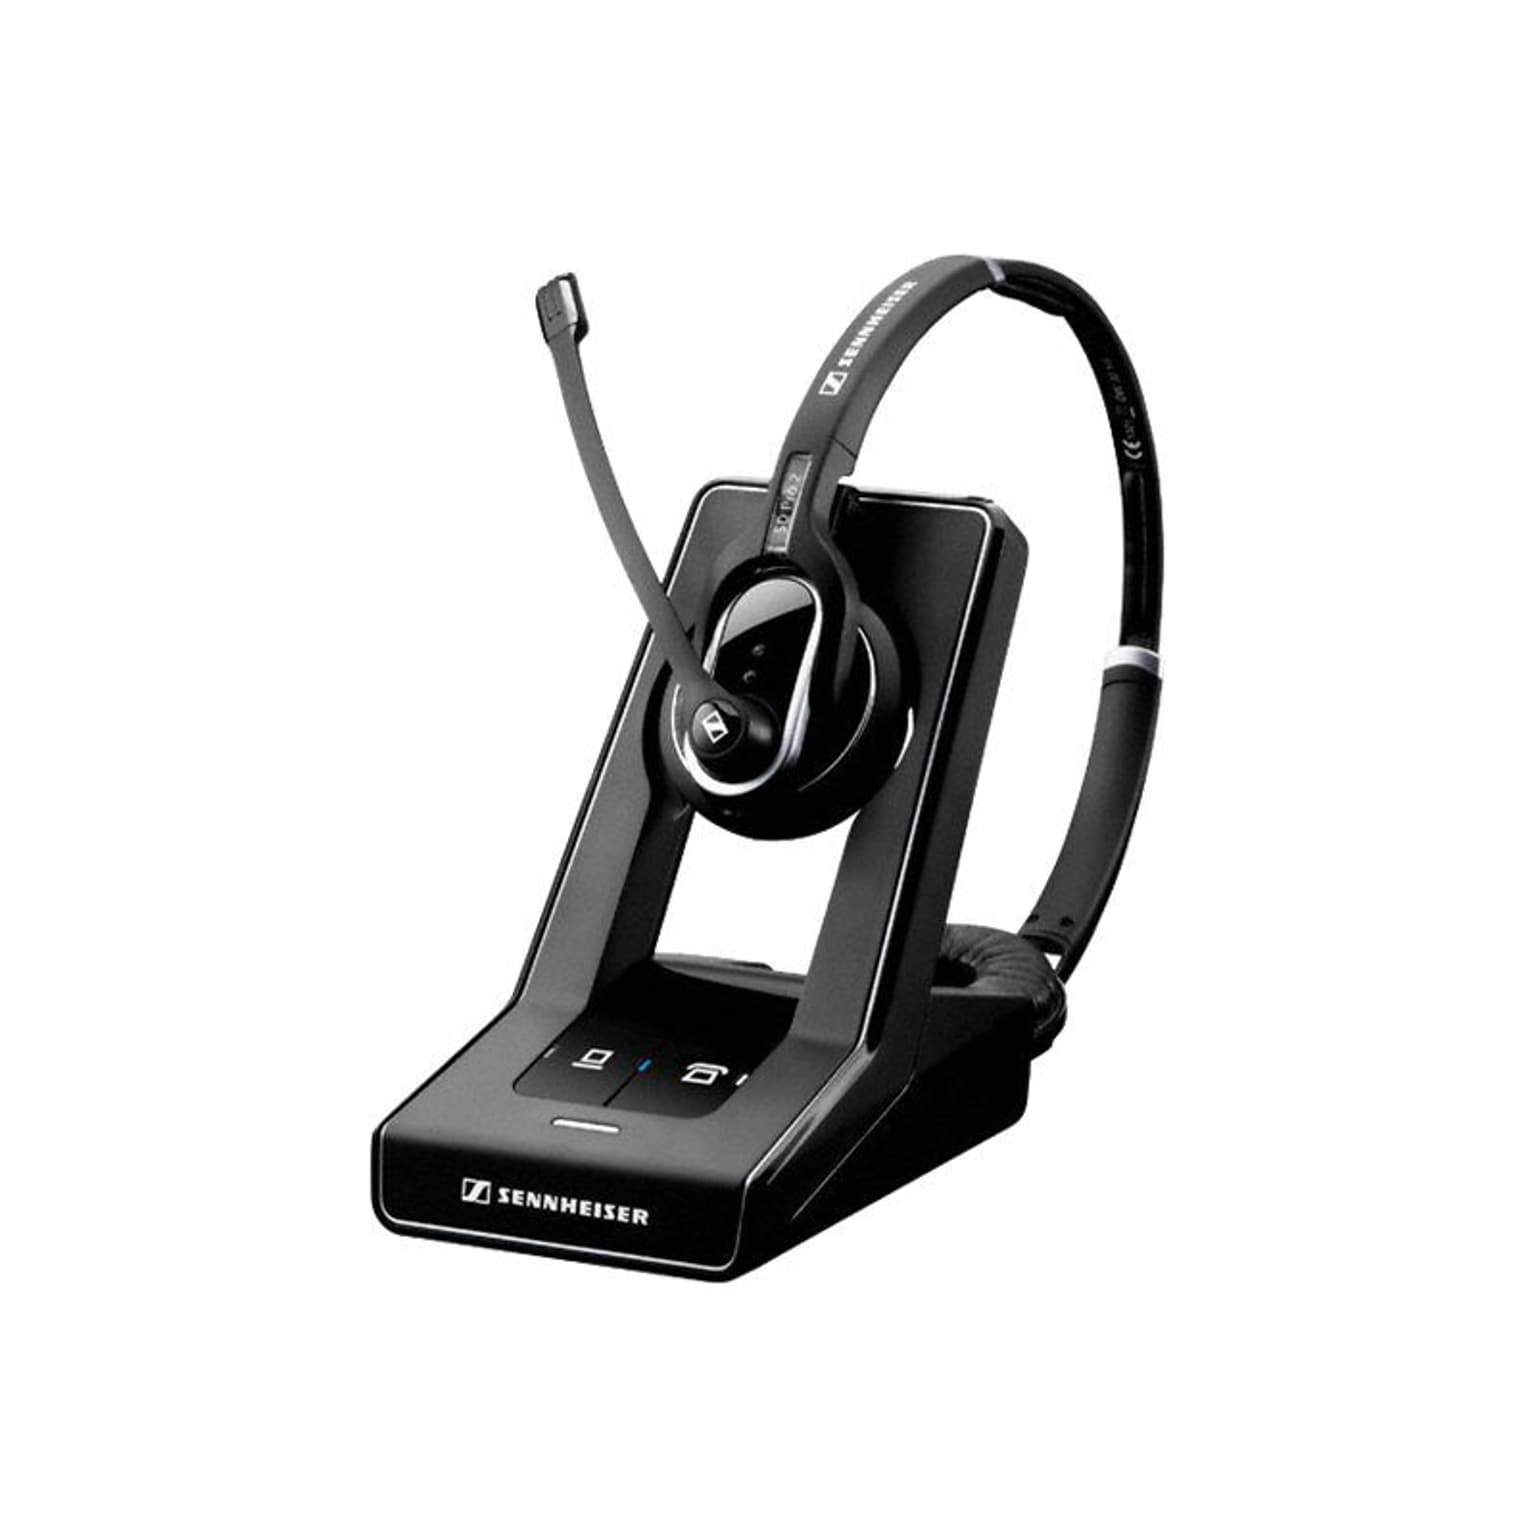 Sennheiser SD Pro 2 ML Wireless Stereo Headset, Over-the-Head, Black (506011)